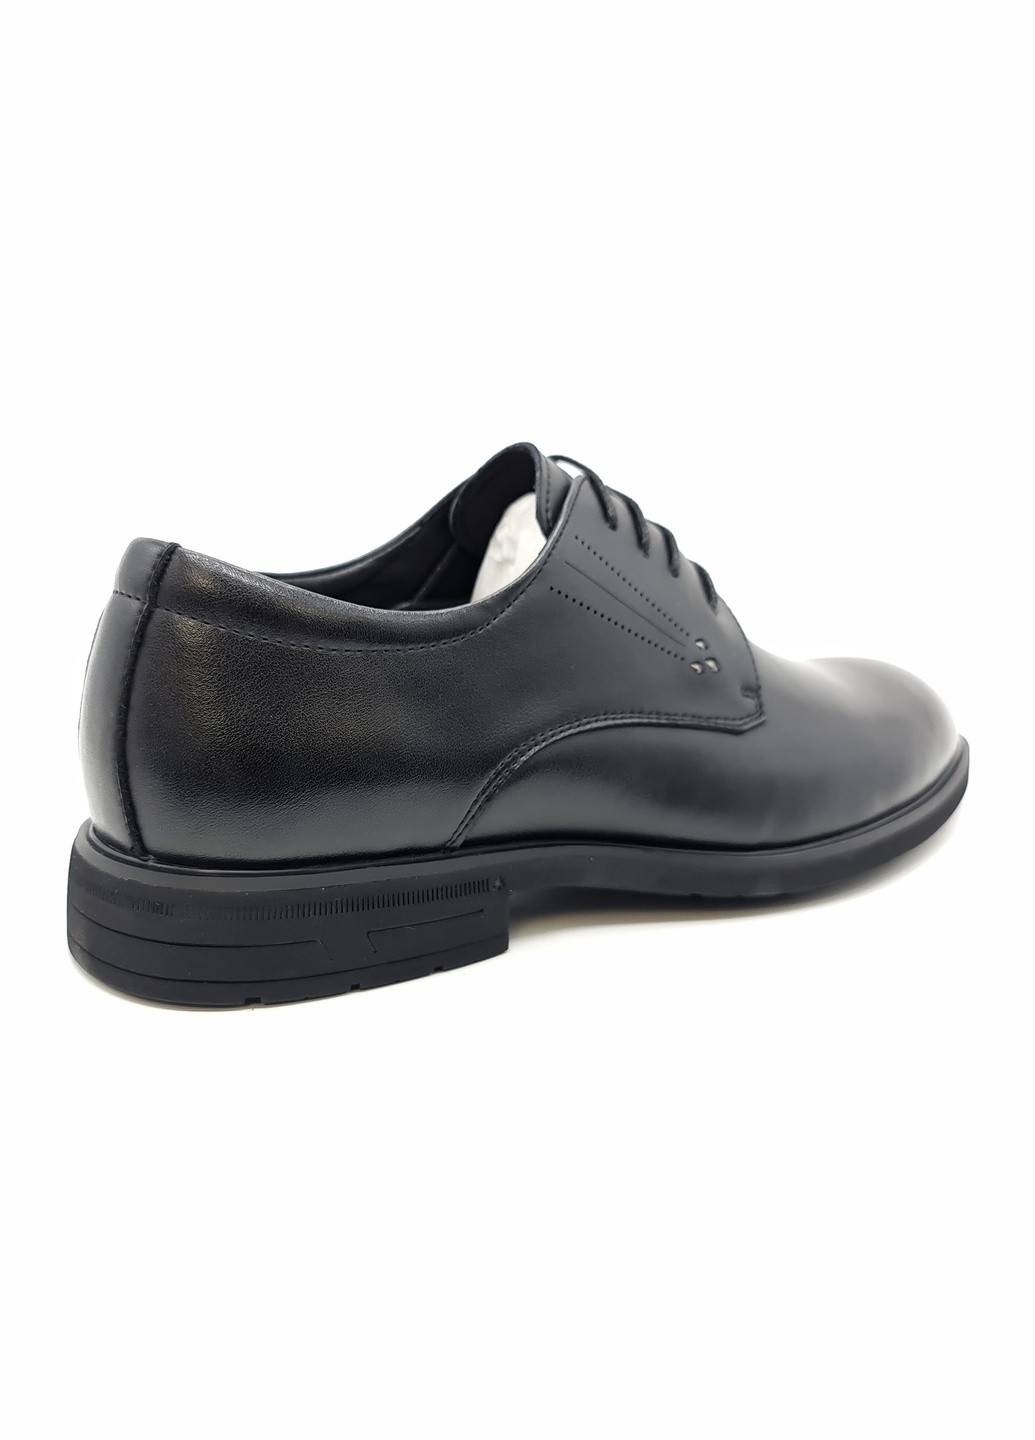 Черные чоловічі туфлі чорні шкіряні ya-11-12 29 см (р) Yalasou